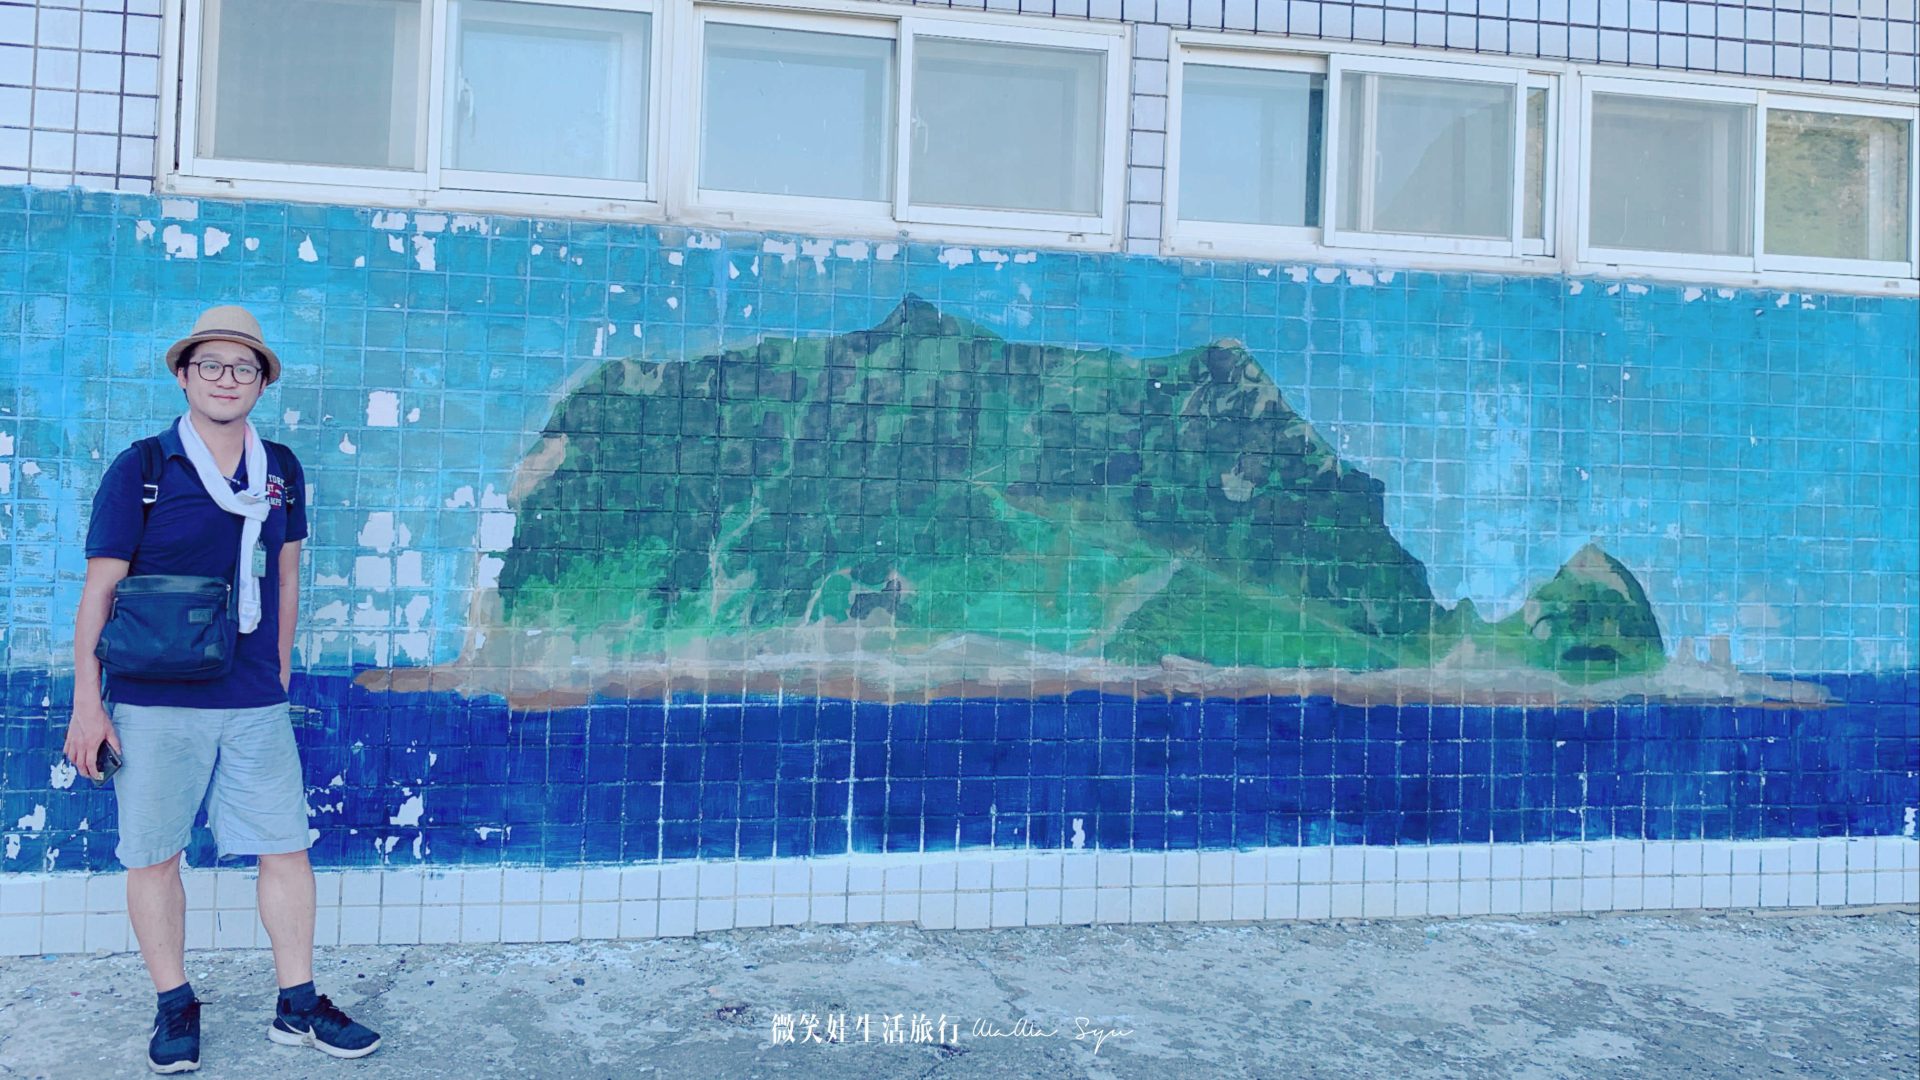 通往海巡宿舍旁有個籃球場還有基隆嶼的壁畫